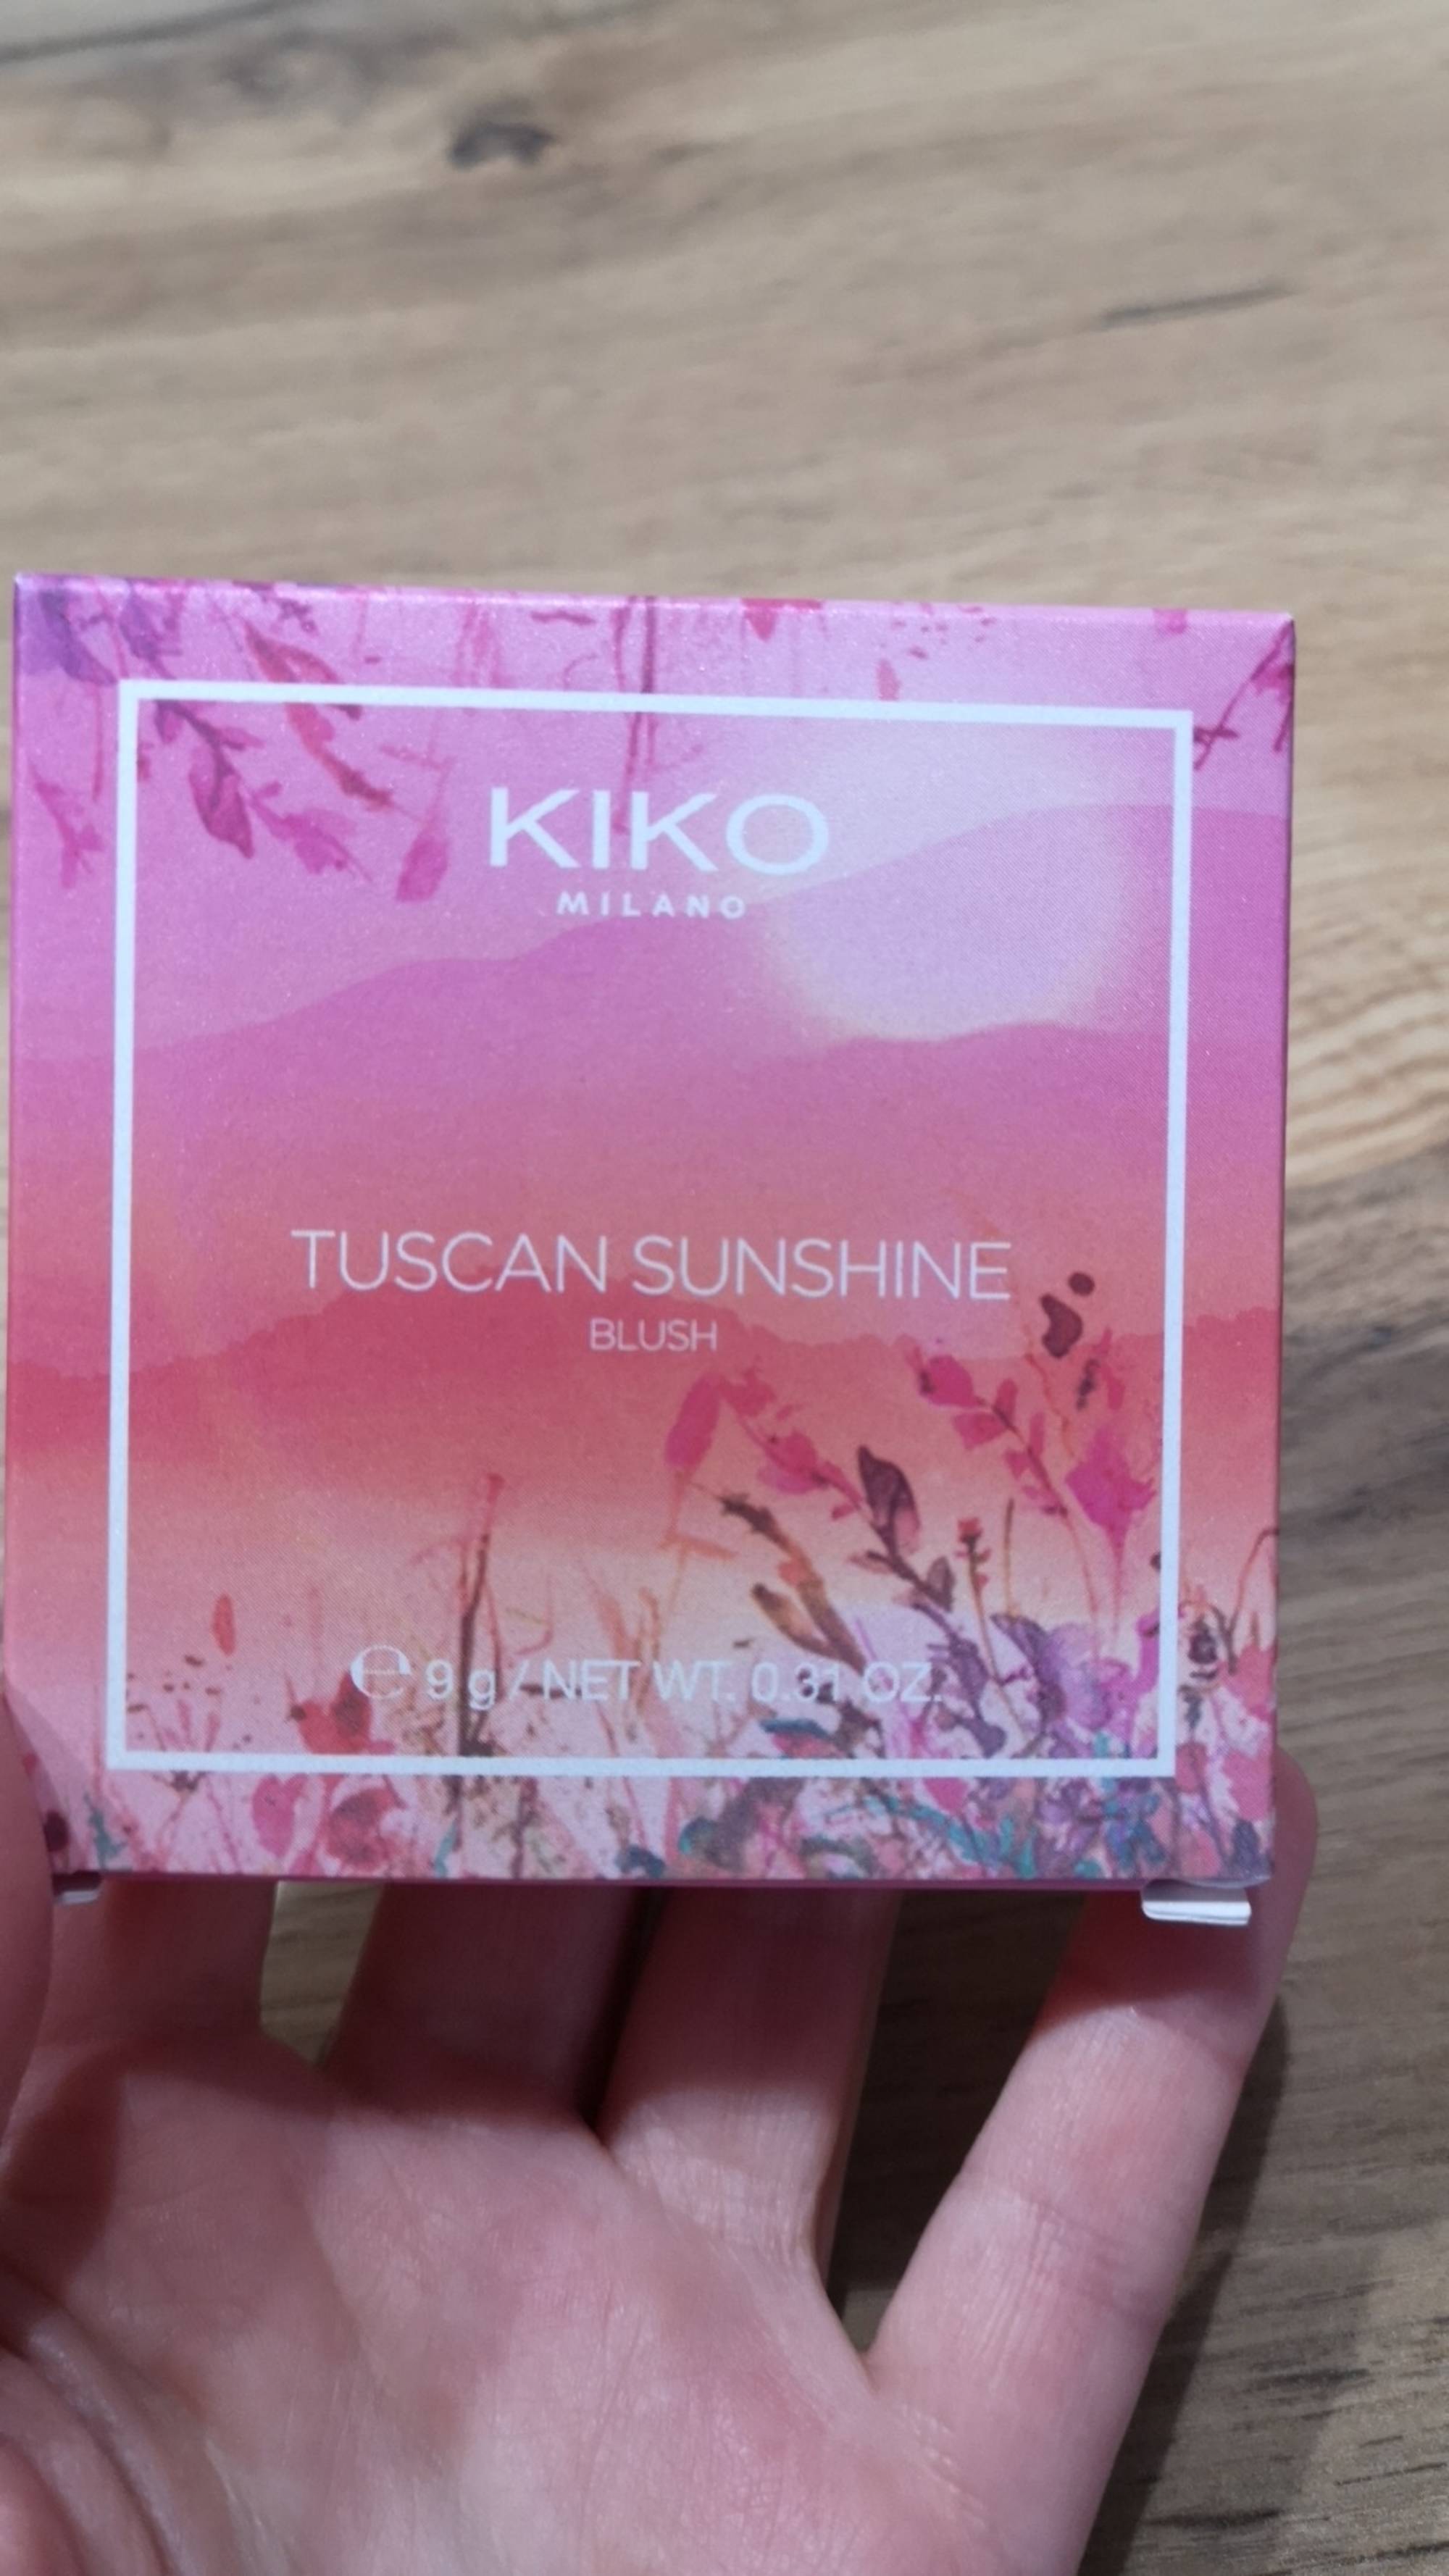 KIKO - Tuscan sunshine blush